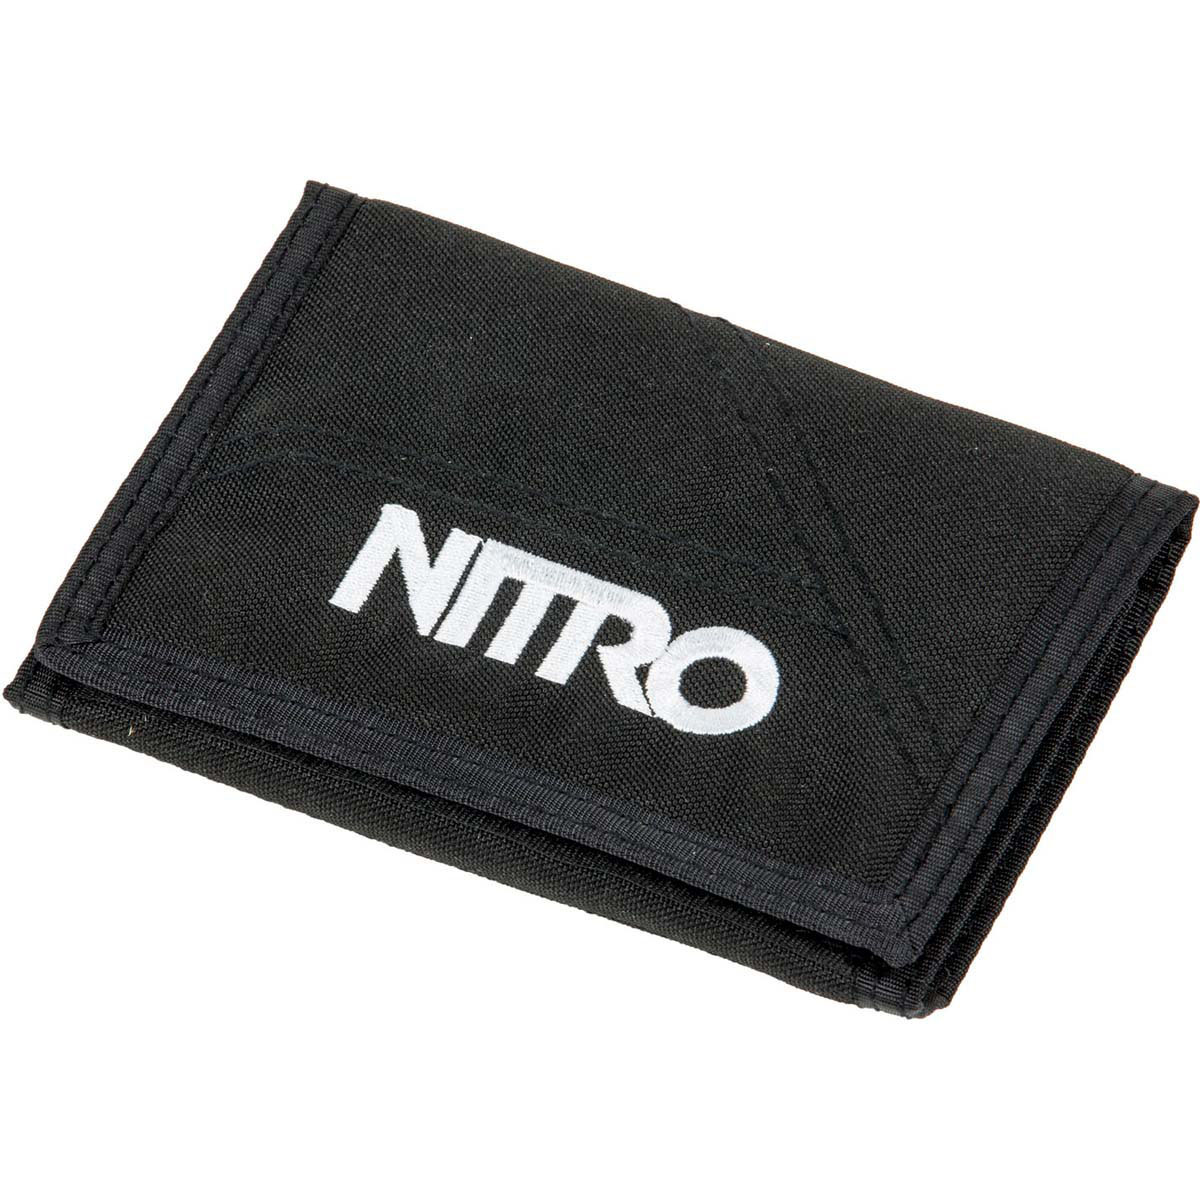 Nitro Wallet Geldbeutel Black | Nitrobags Shop